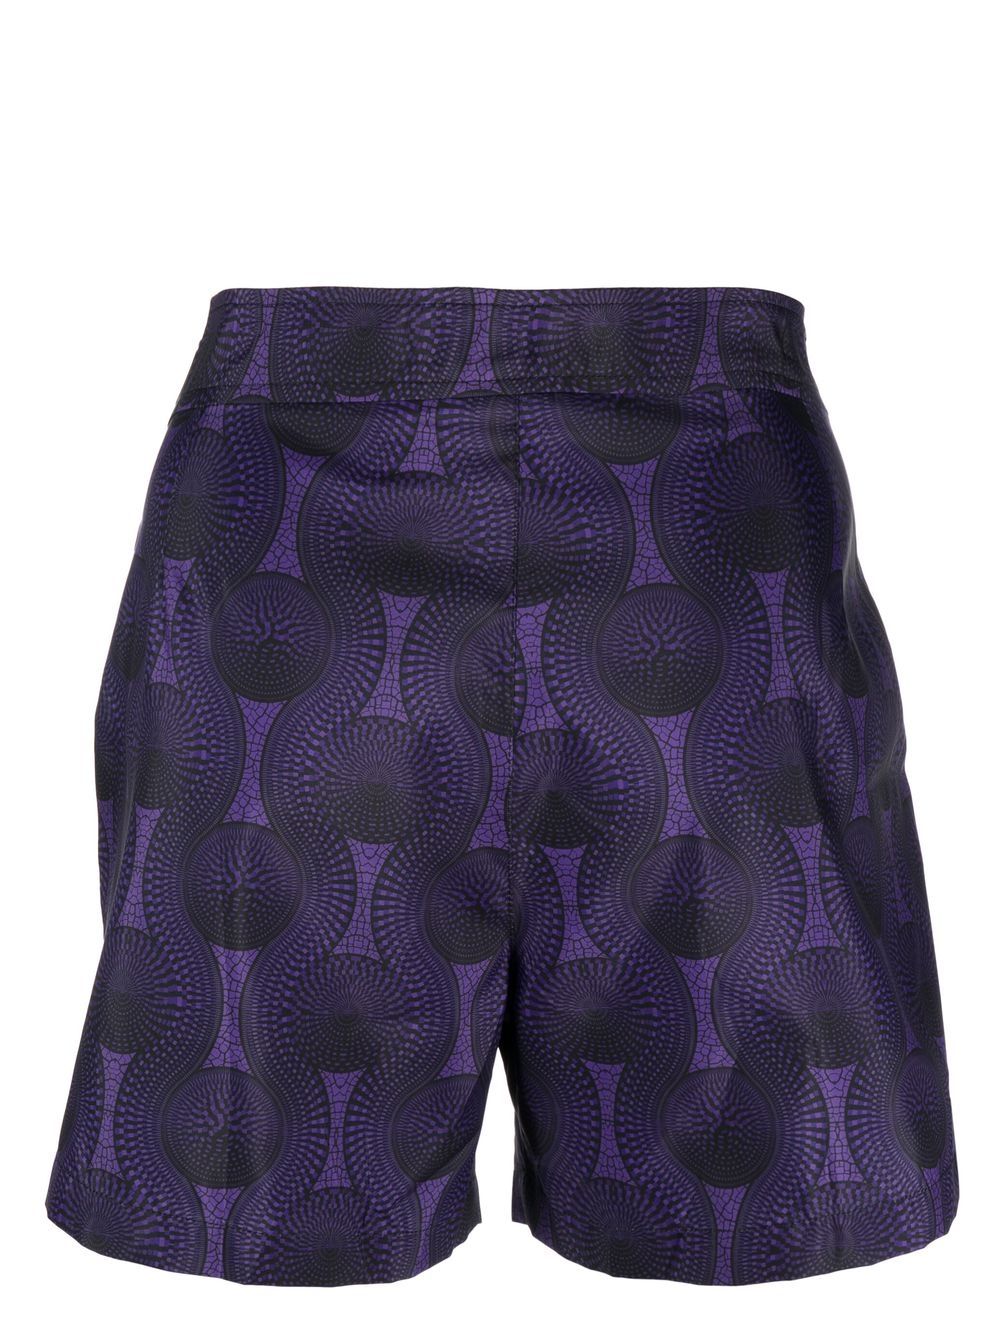 Ozwald Boateng OZWALD BOATENG Sea clothing Purple